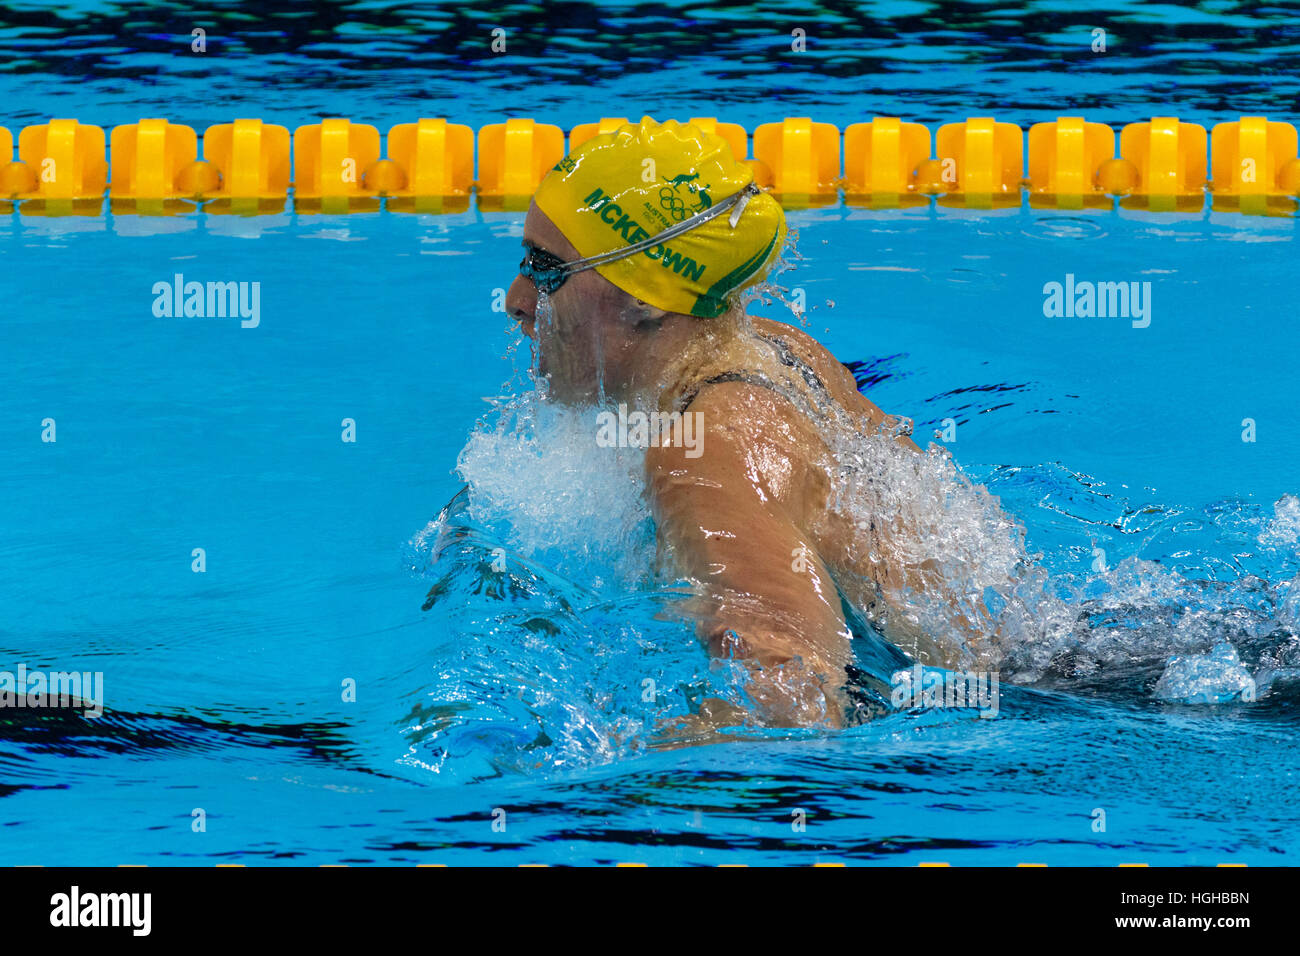 Rio de Janeiro, Brésil. 11 août 2016. Emma McKeon (AUS) qui se font concurrence sur le 200m brasse finale aux Jeux Olympiques de 2016 Banque D'Images